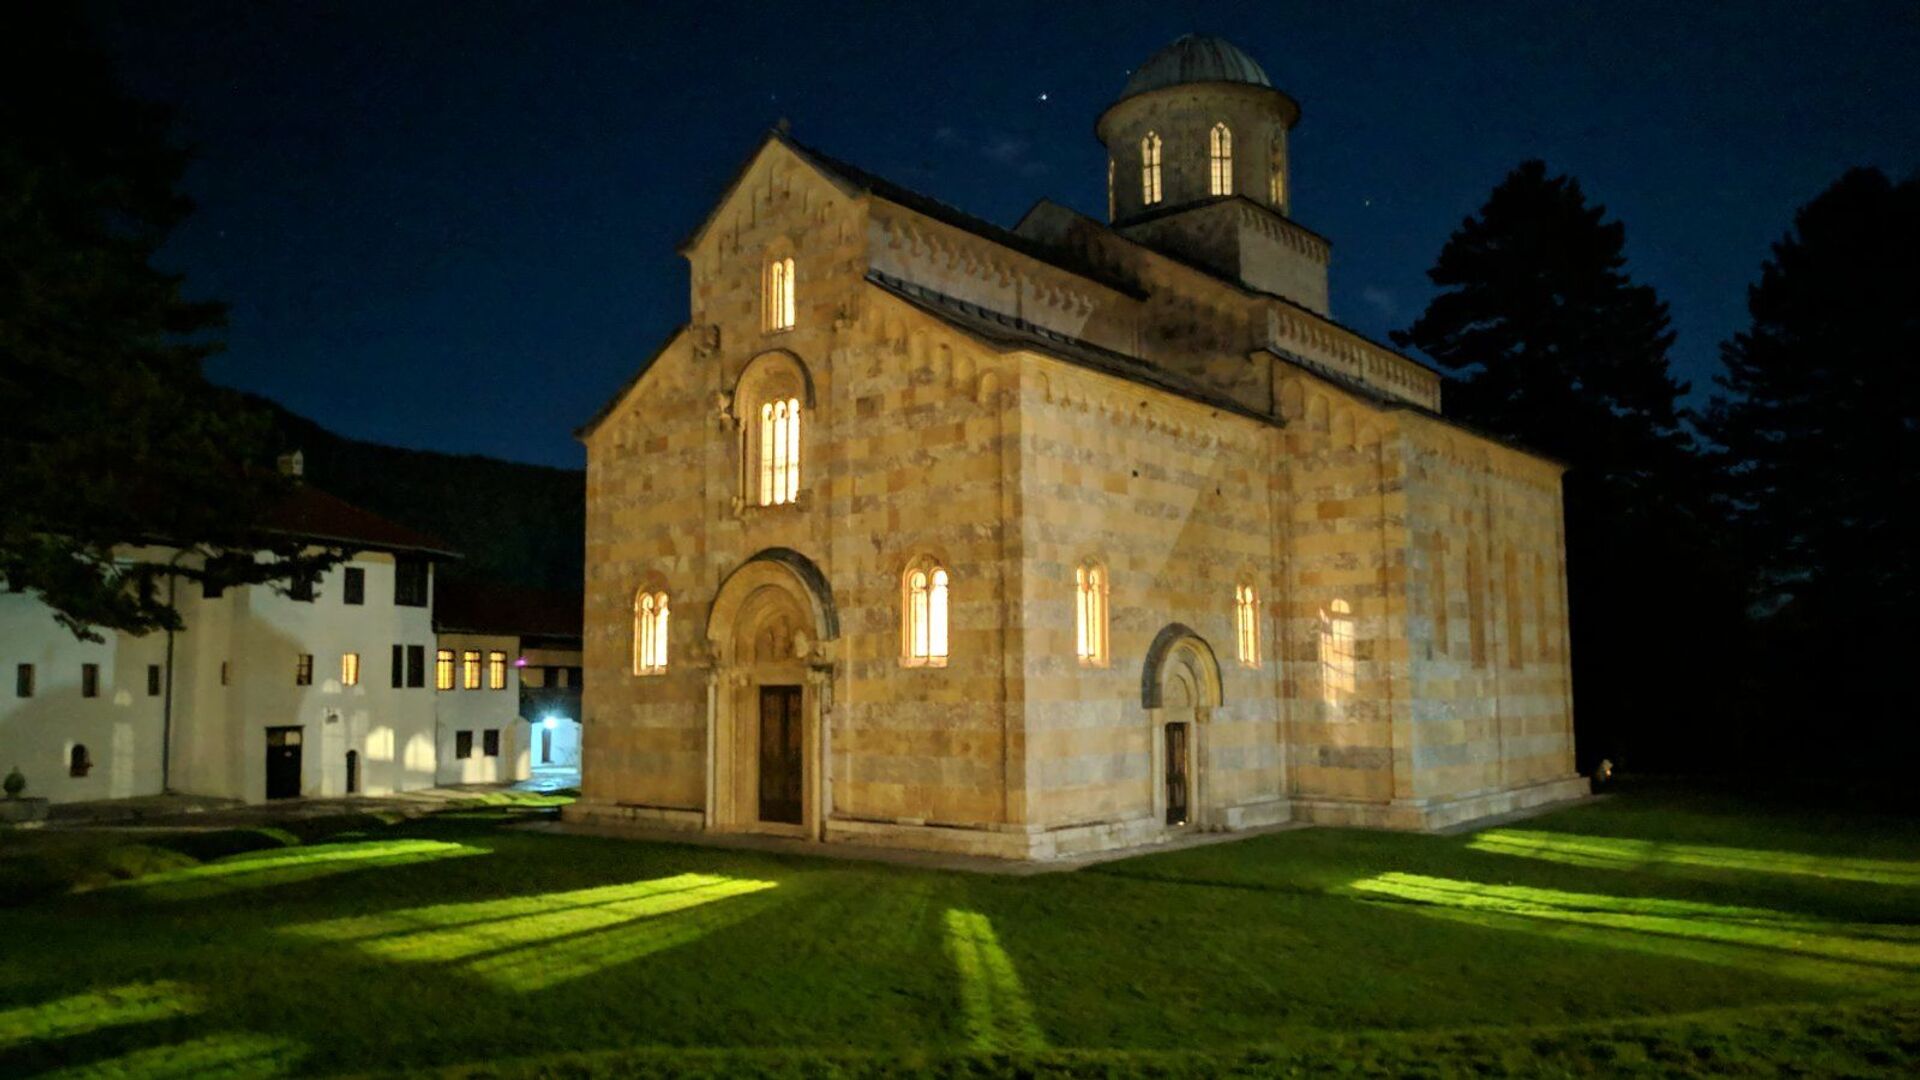 Četiri puta napadan oružano, manastir Viskoki Dečani je najčešće napadan objekat, ne samo Srpske Pravoslavne Crkve, već hrišćanski,na teritoriji Evrope od Drugog svetskog rata. - Sputnik Srbija, 1920, 18.05.2021